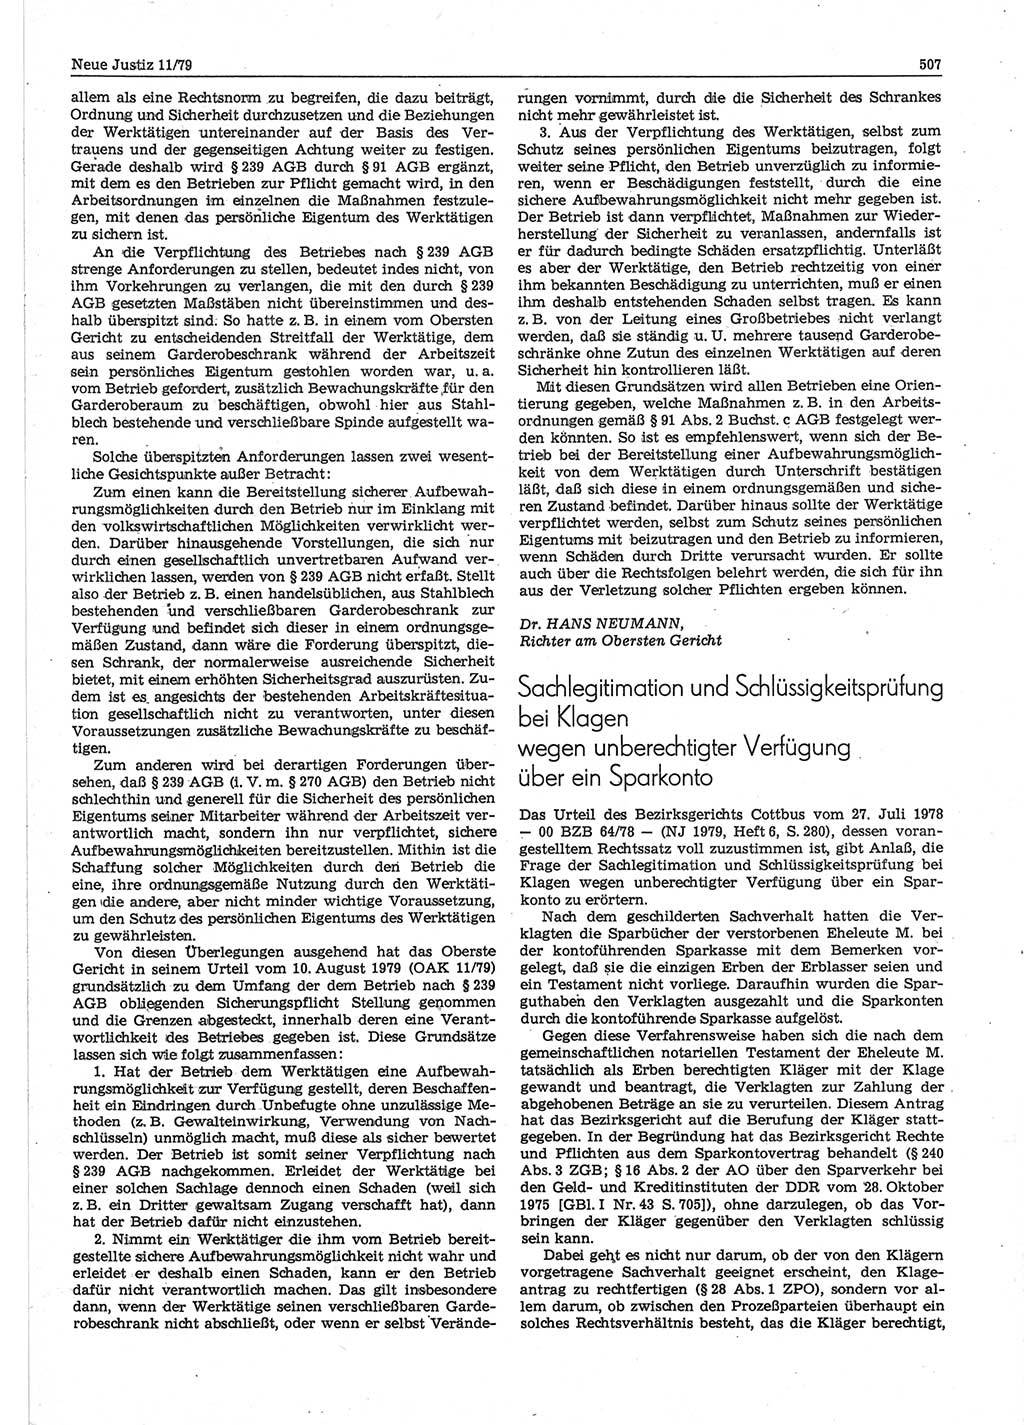 Neue Justiz (NJ), Zeitschrift für sozialistisches Recht und Gesetzlichkeit [Deutsche Demokratische Republik (DDR)], 33. Jahrgang 1979, Seite 507 (NJ DDR 1979, S. 507)